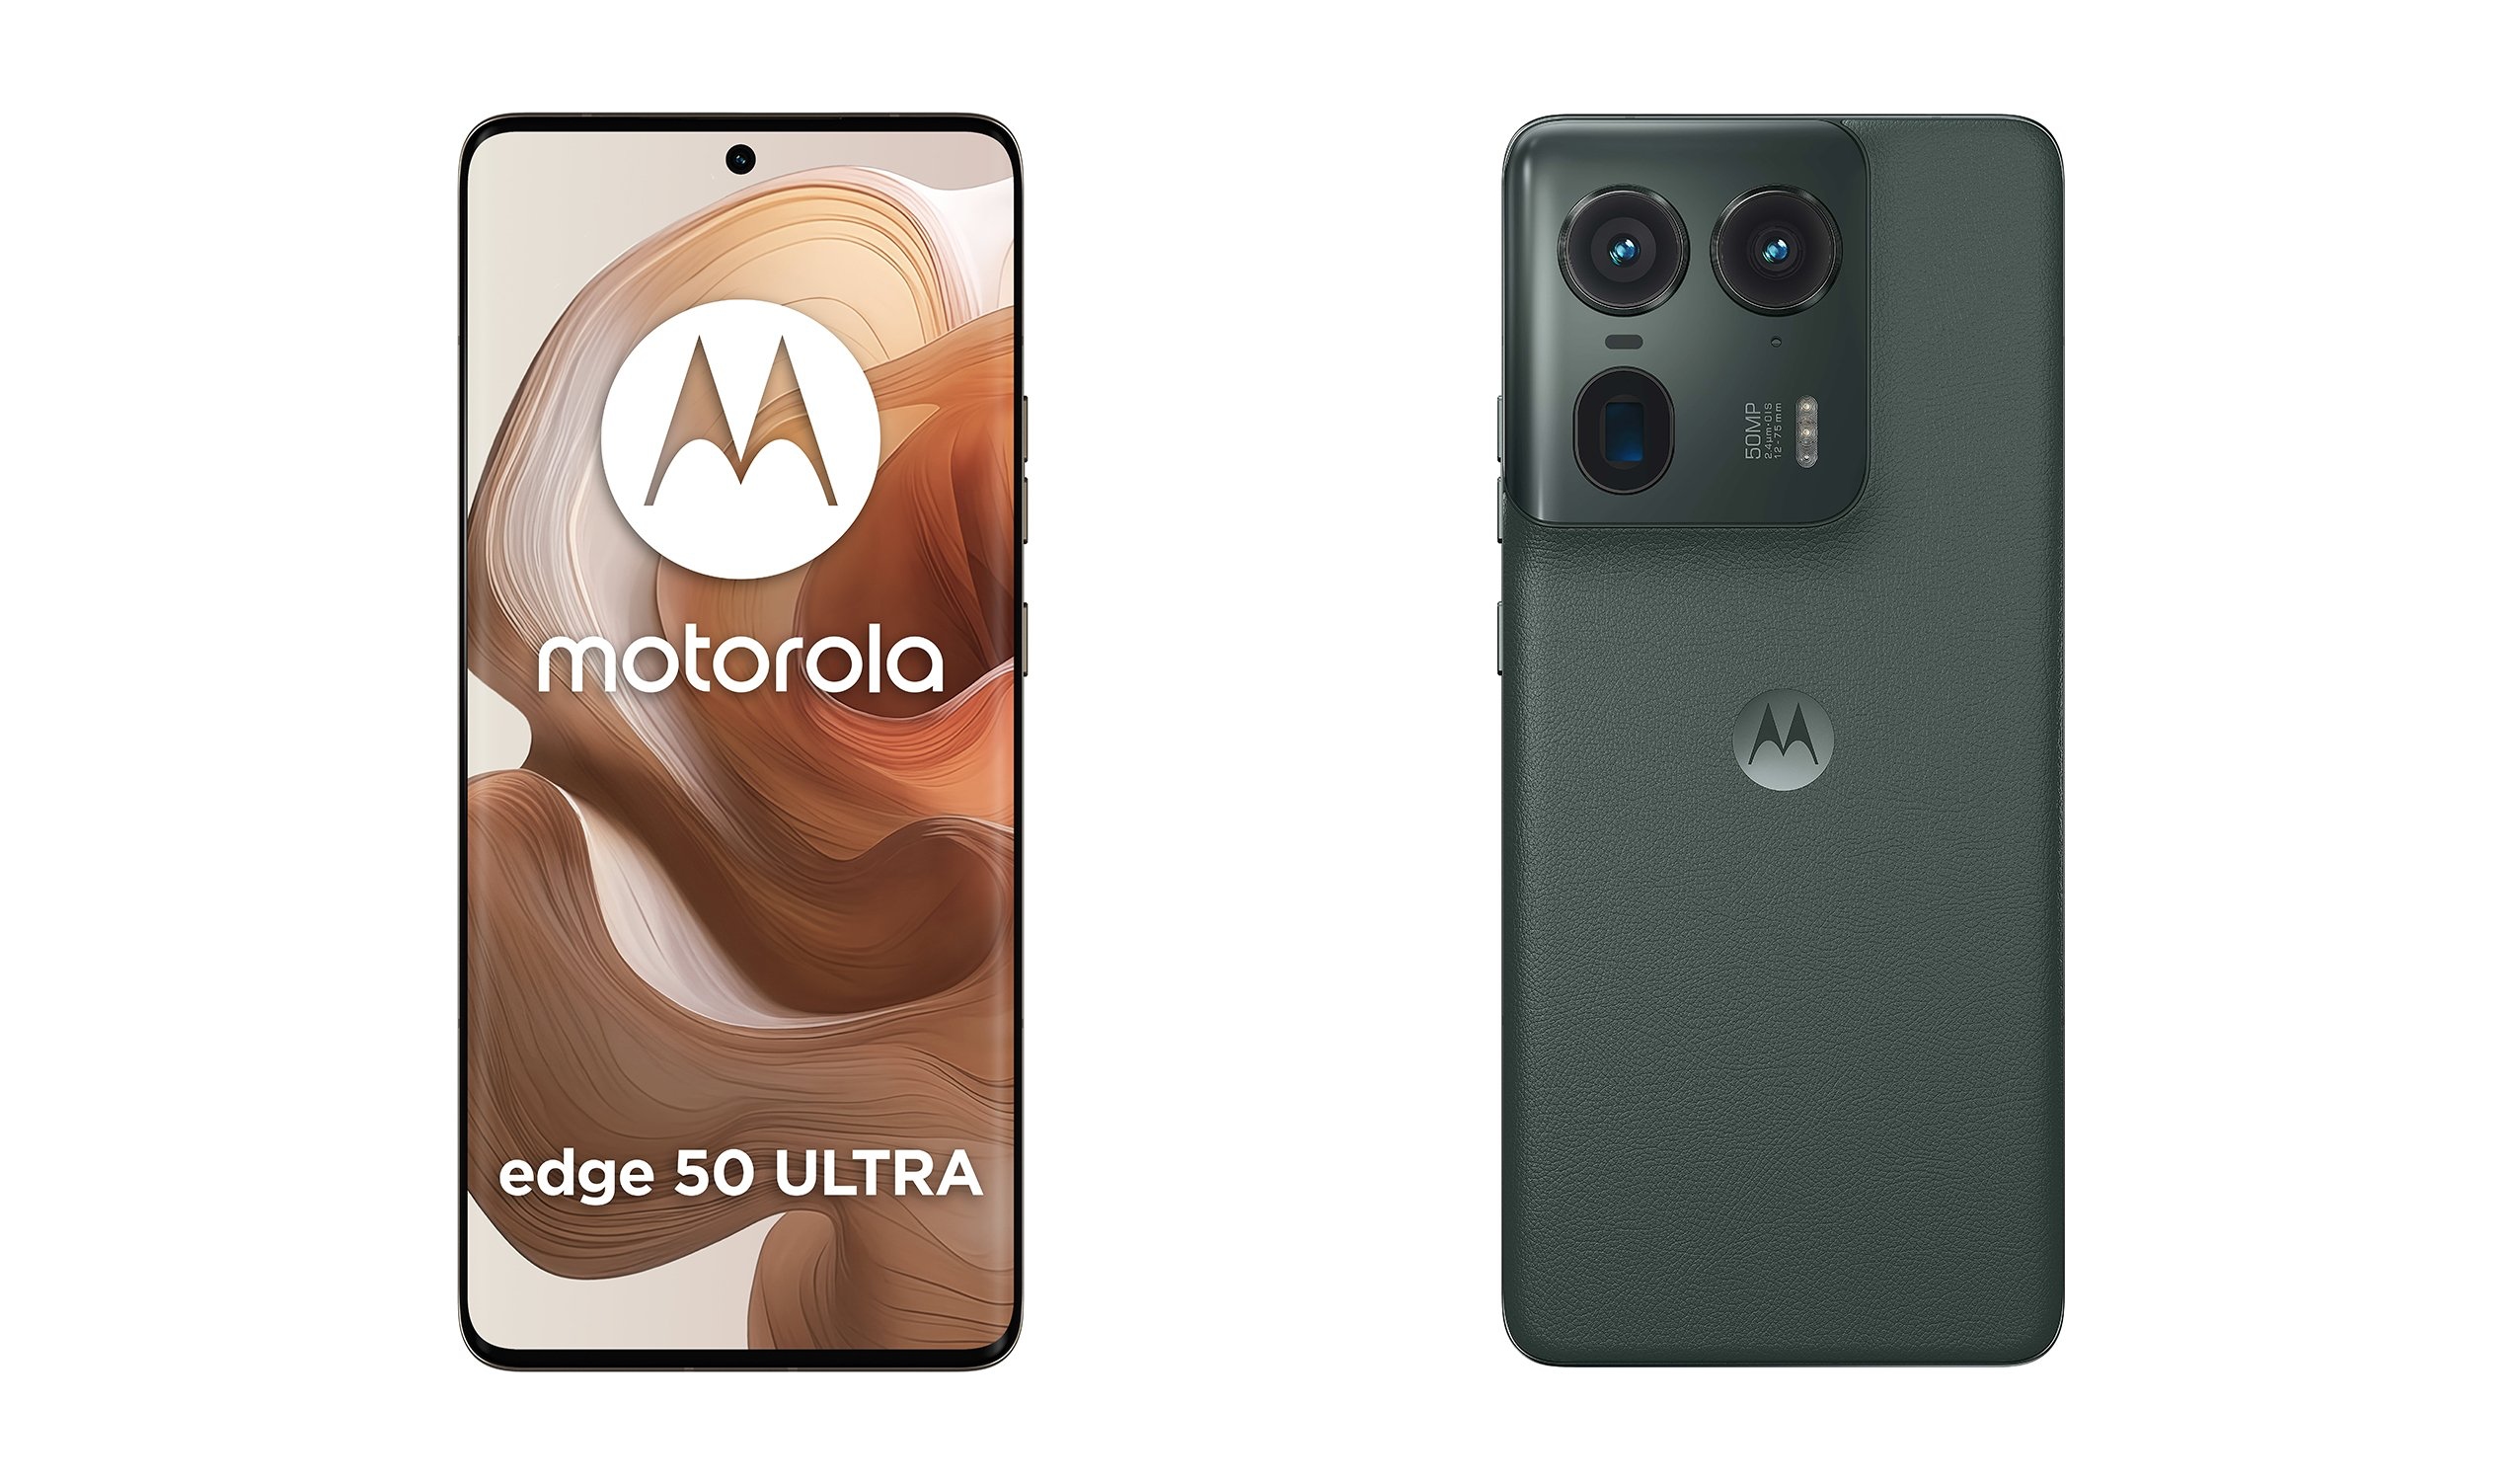 Gebogener Bildschirm und Periscope-Kamera: Insider verrät Werbevideos des Motorola Edge 50 Ultra Flaggschiffs